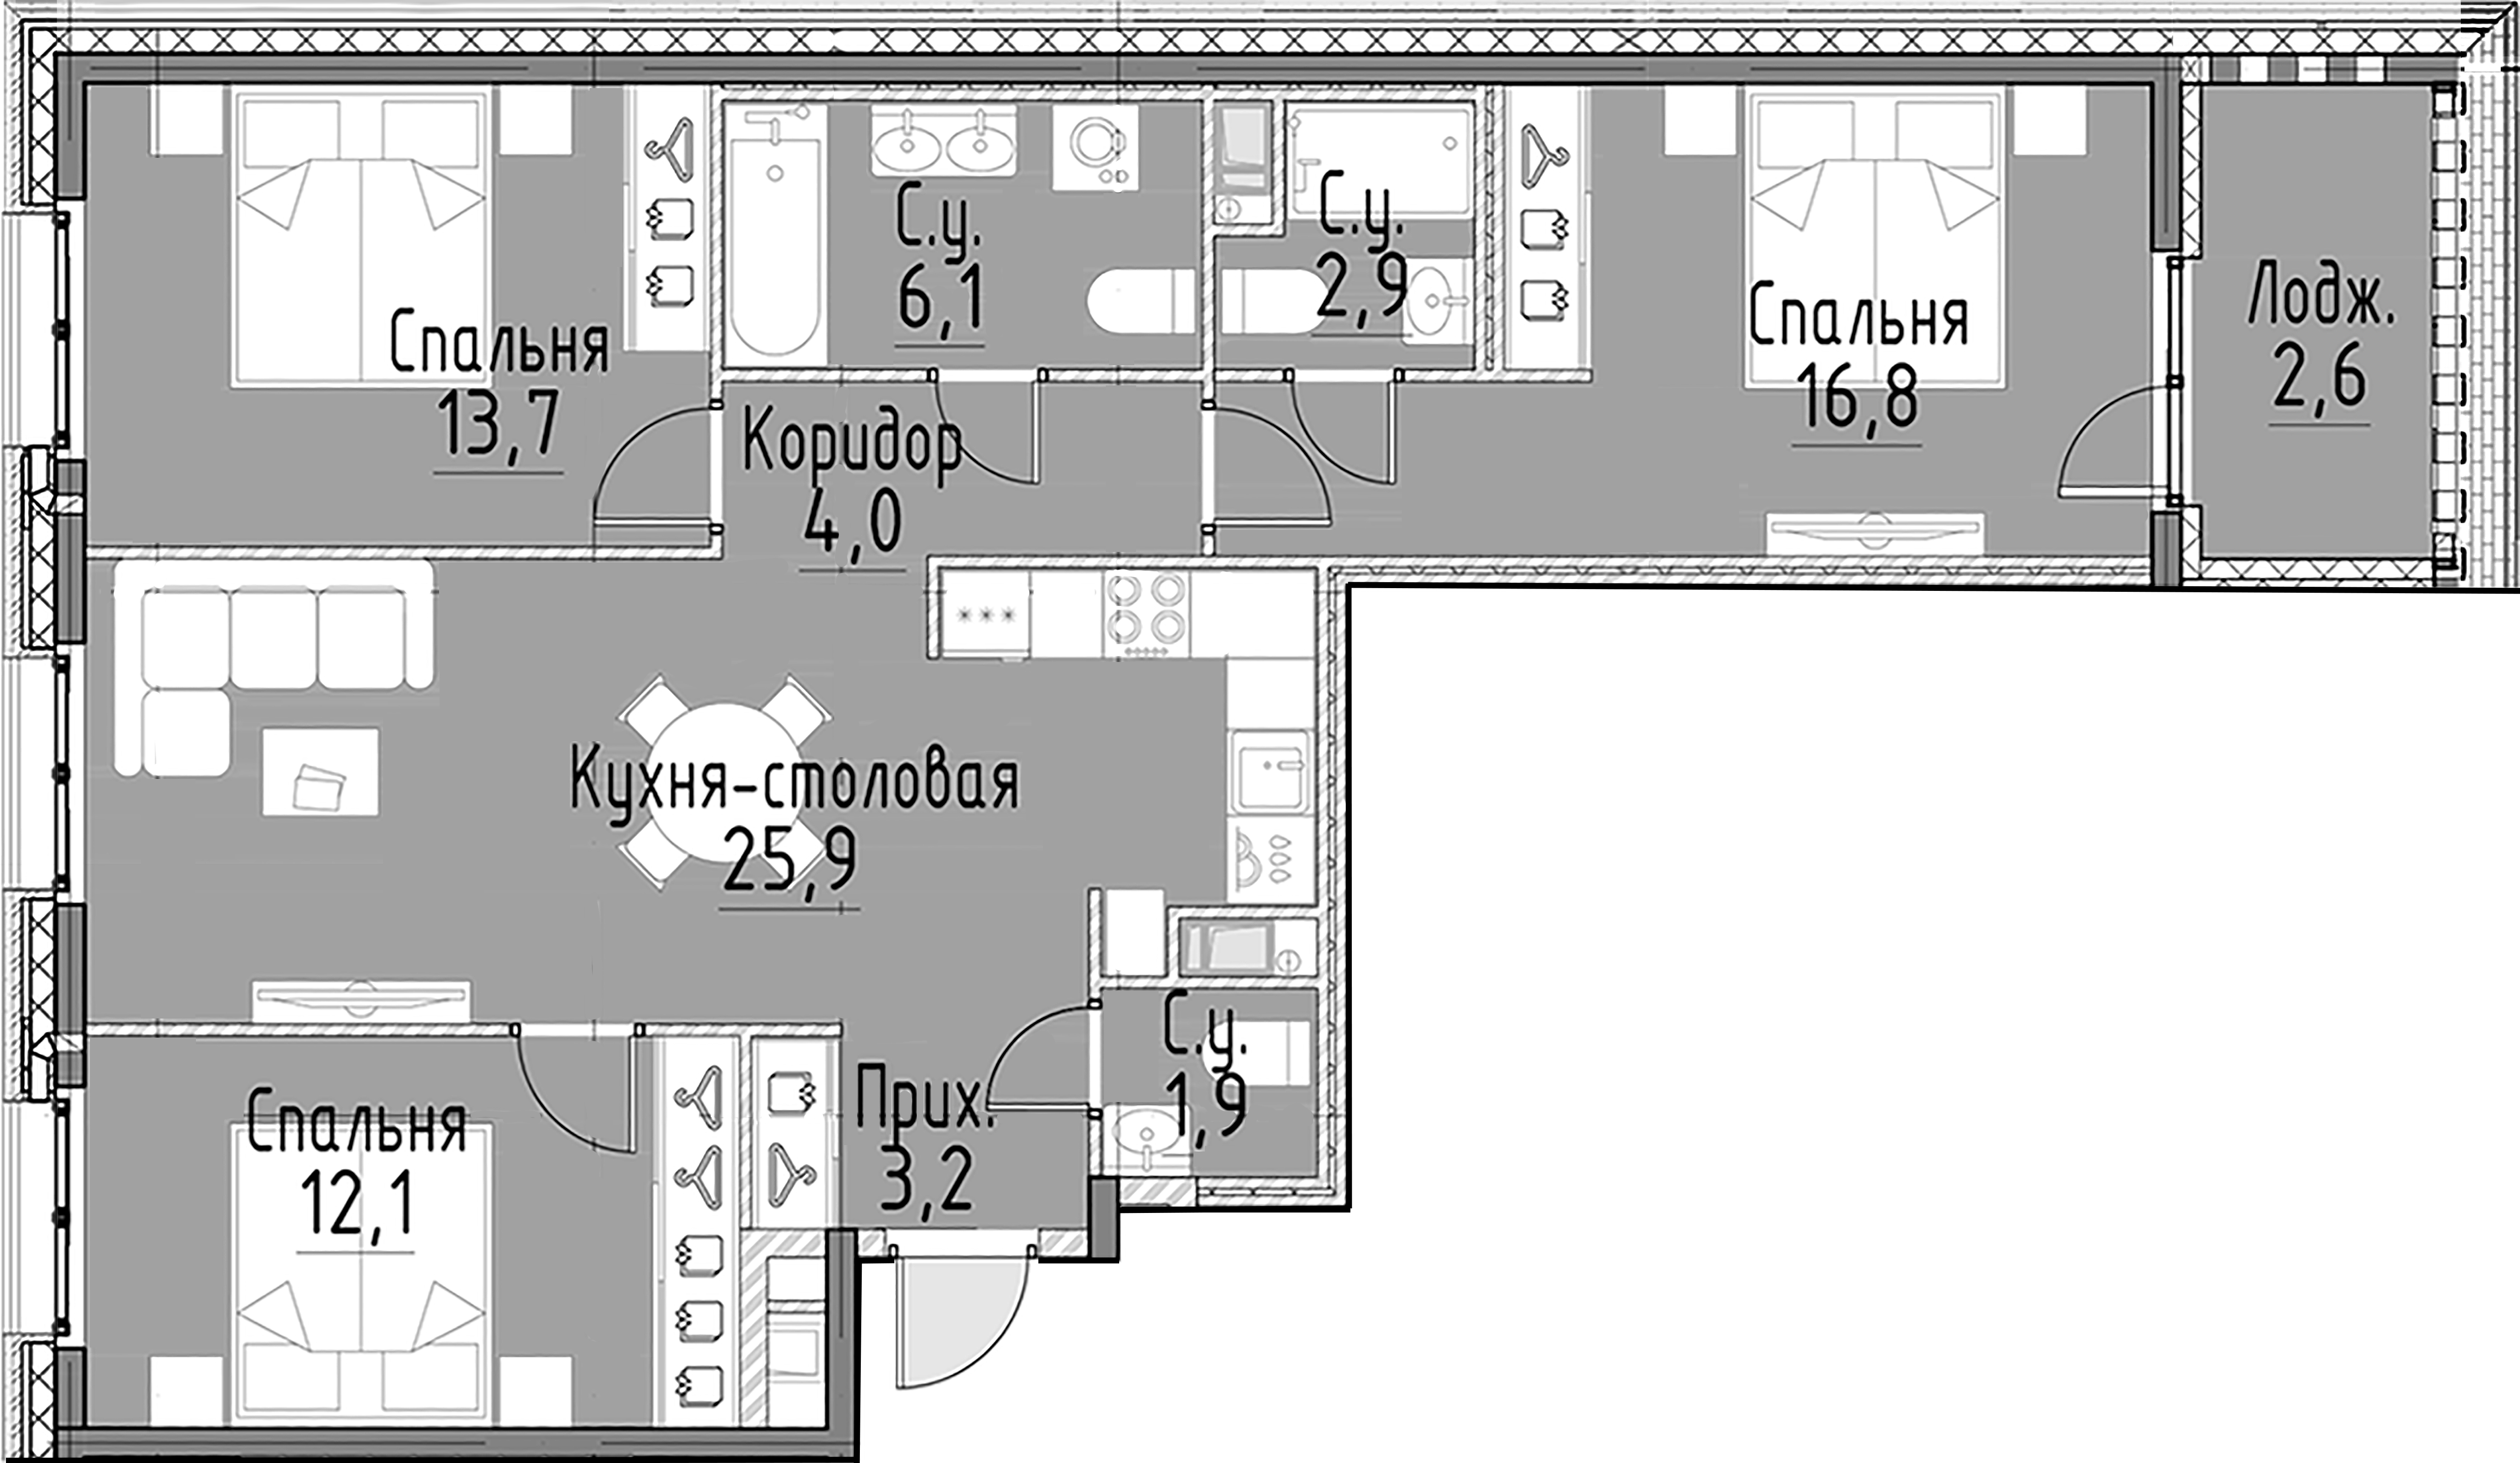 3-комнатная квартира  №118 в Моисеенко, 10: 86.6 м², этаж 6 - купить в Санкт-Петербурге